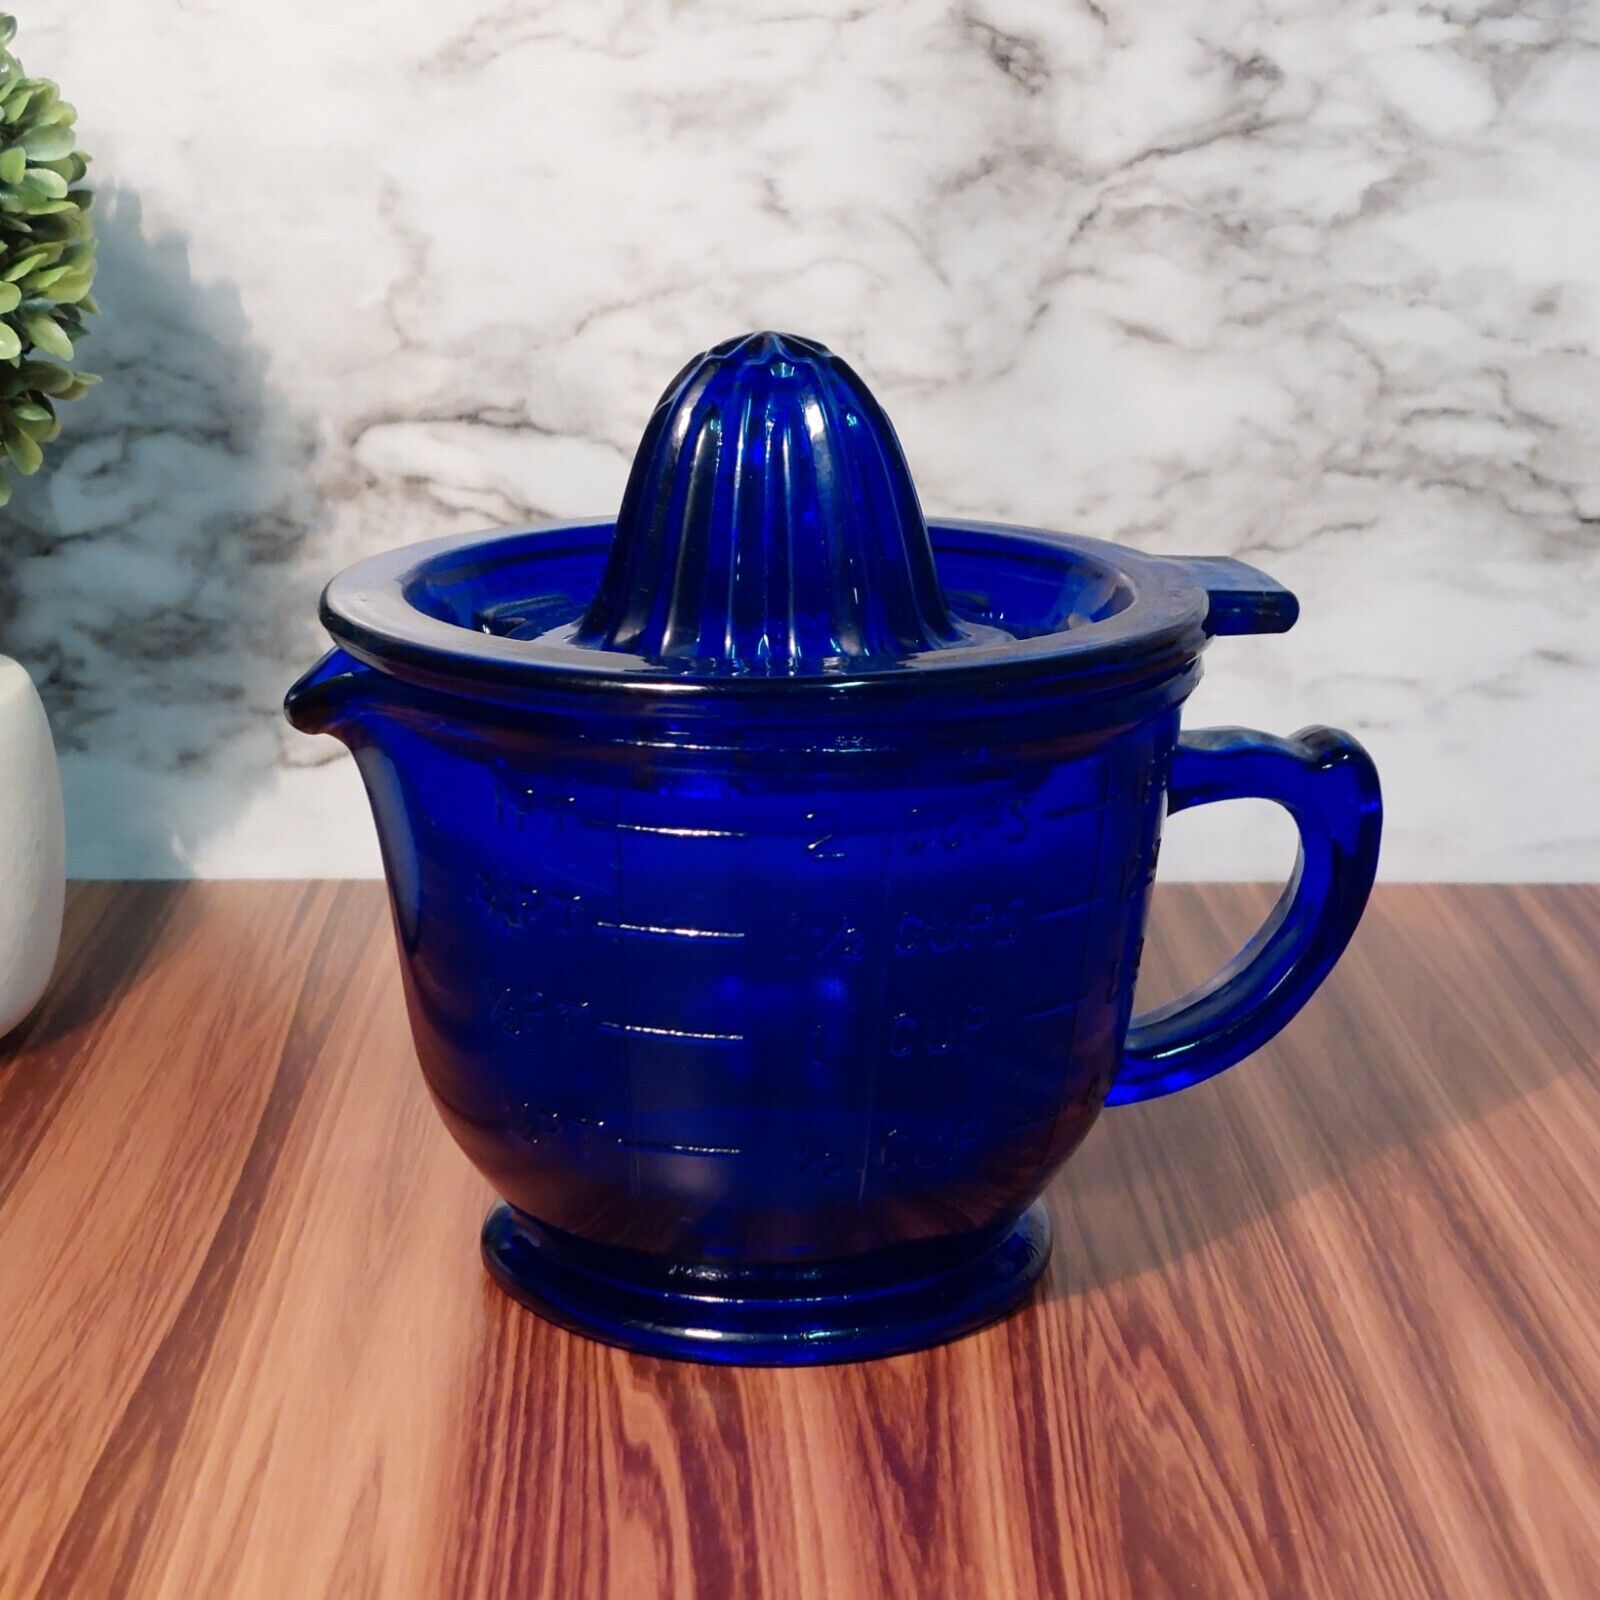 COBALT BLUE DEPRESSION STYLE GLASS JUICER REAMER & 2 CUP MEASURING CUP, Vintage